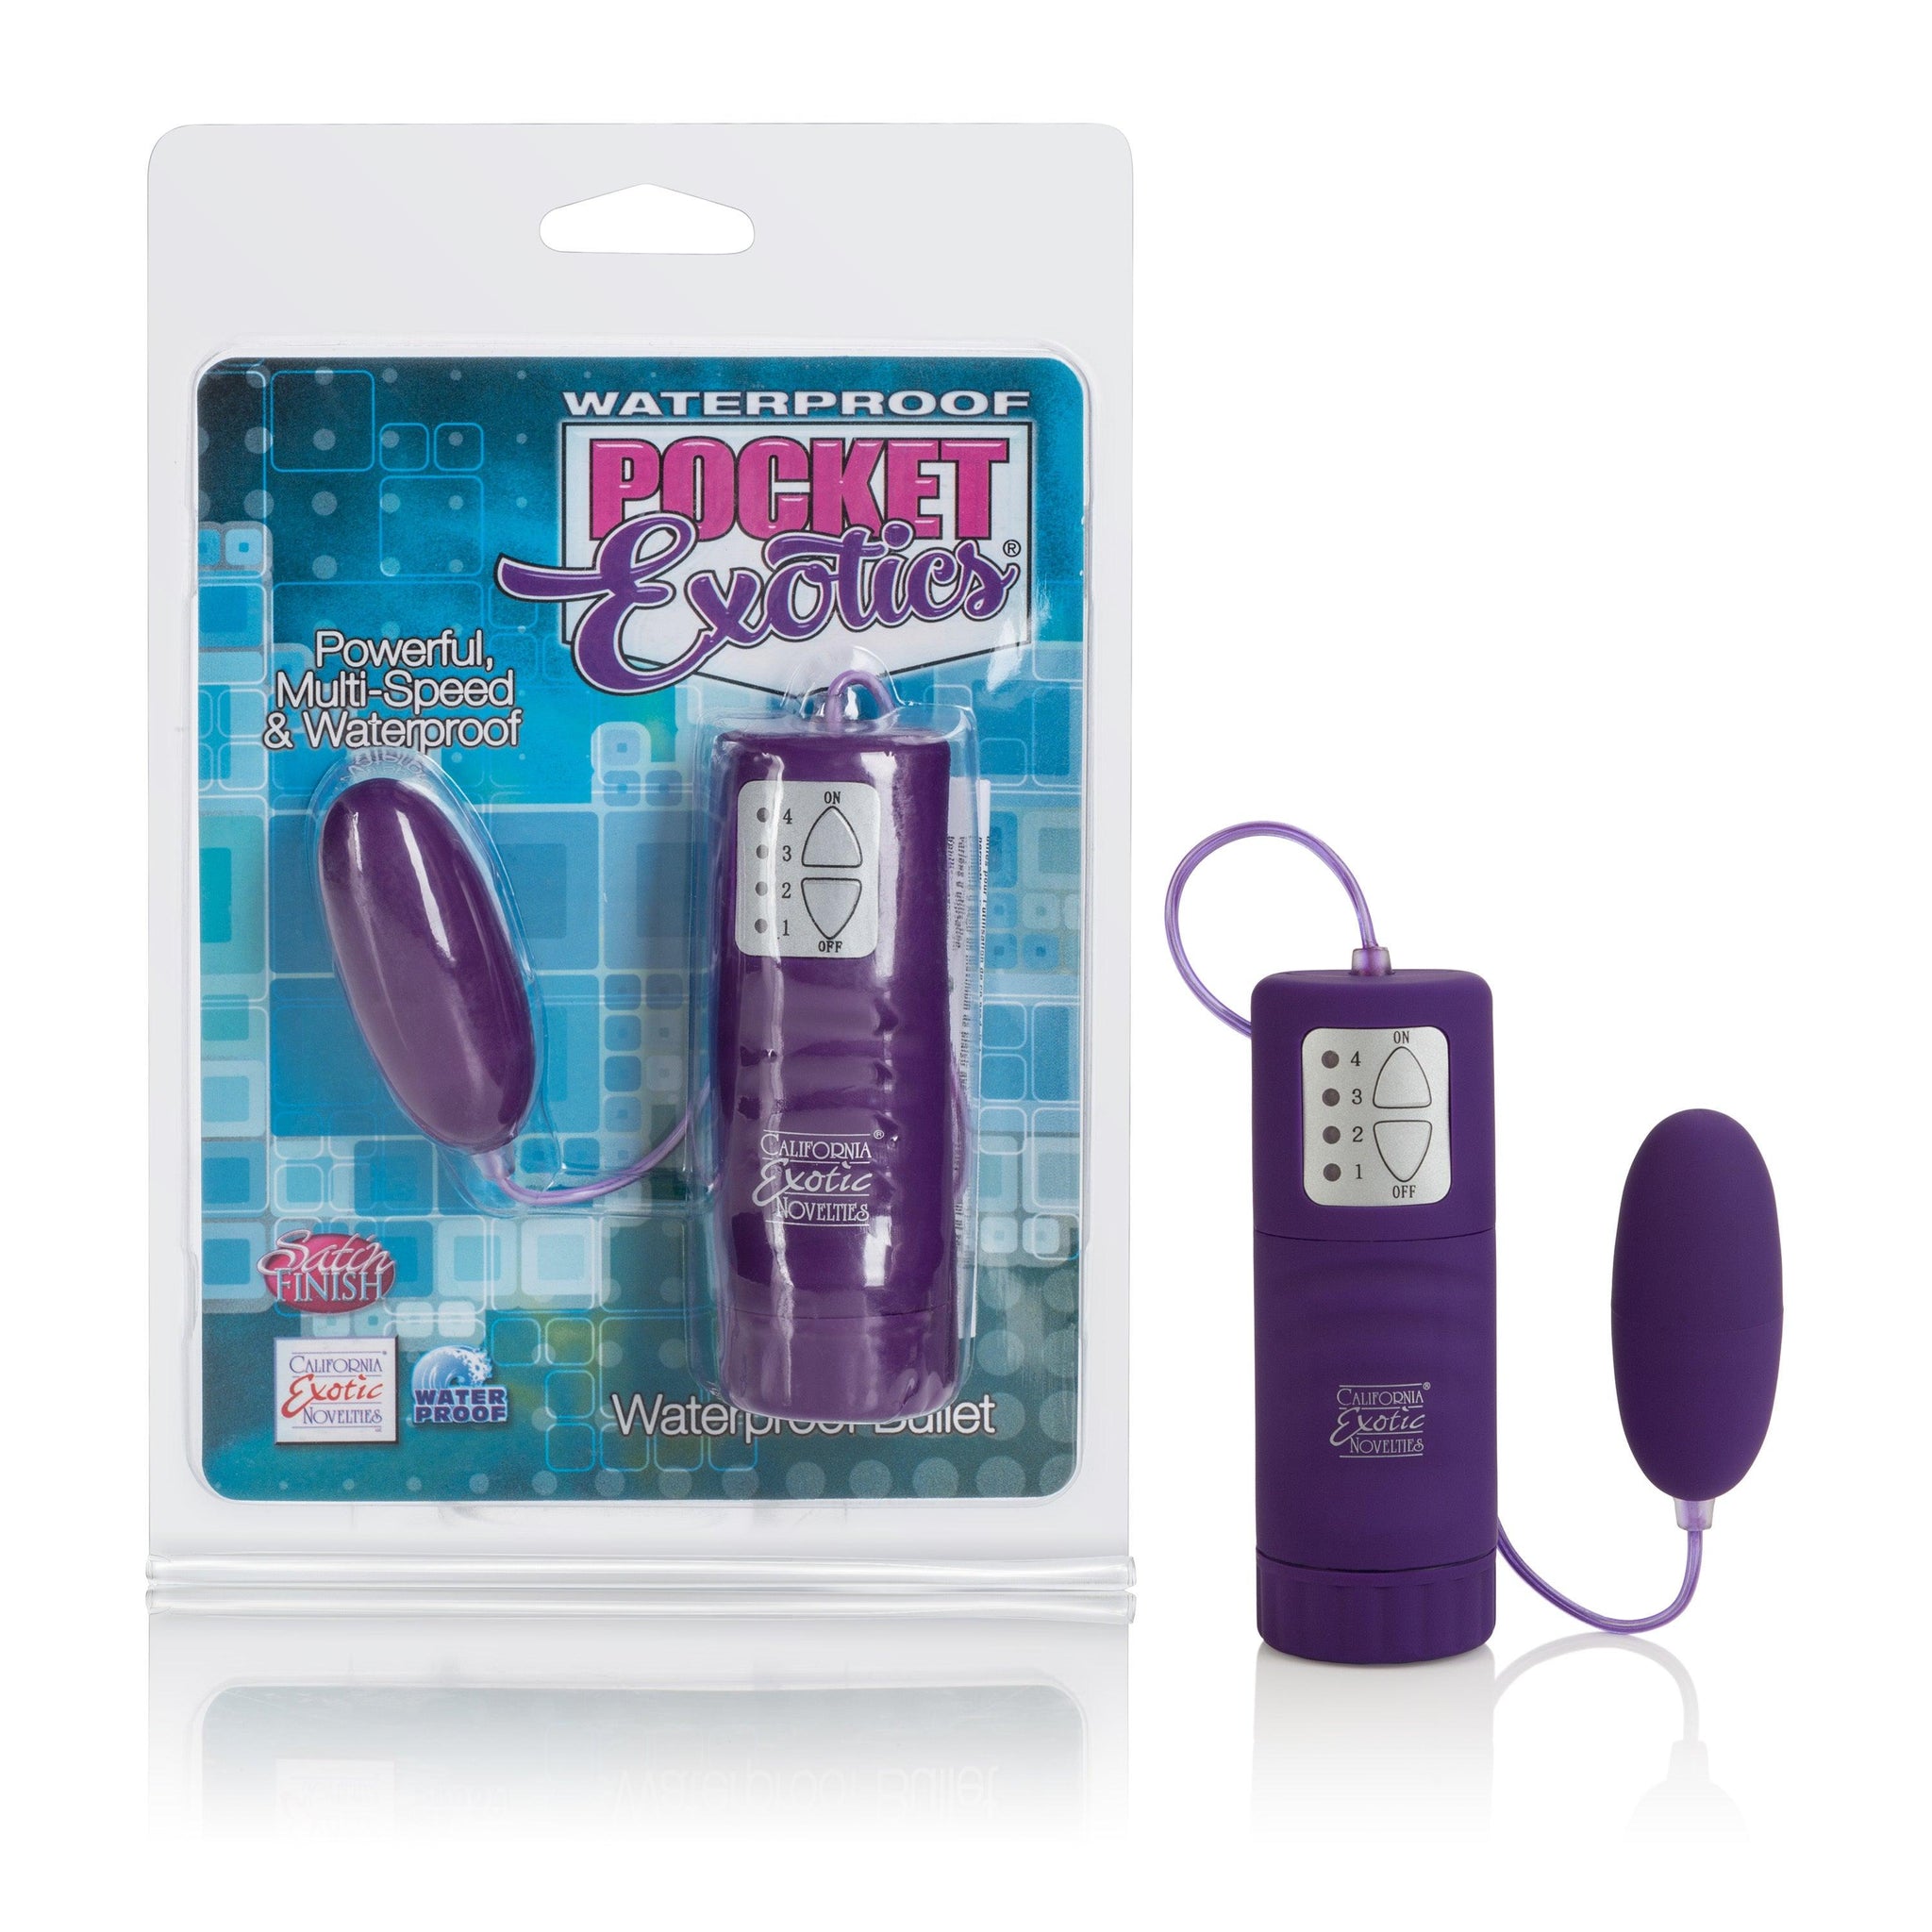 Waterproof Pocket Exotics Waterproof Bullet - Purple -